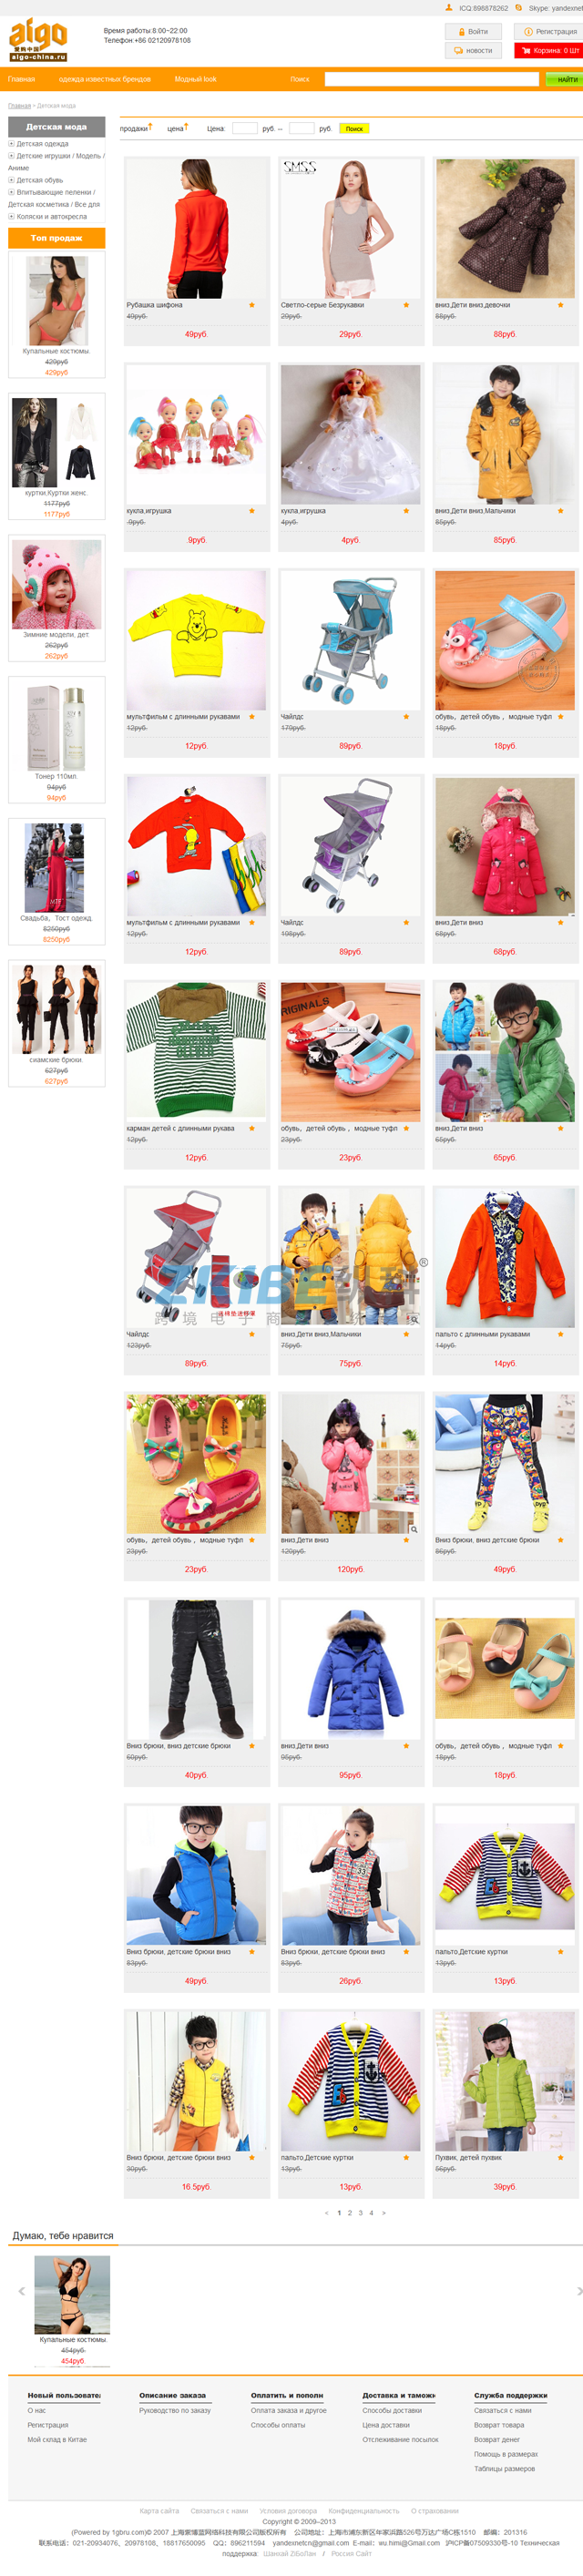 俄罗斯购物网站开发-商品搜索列表页面